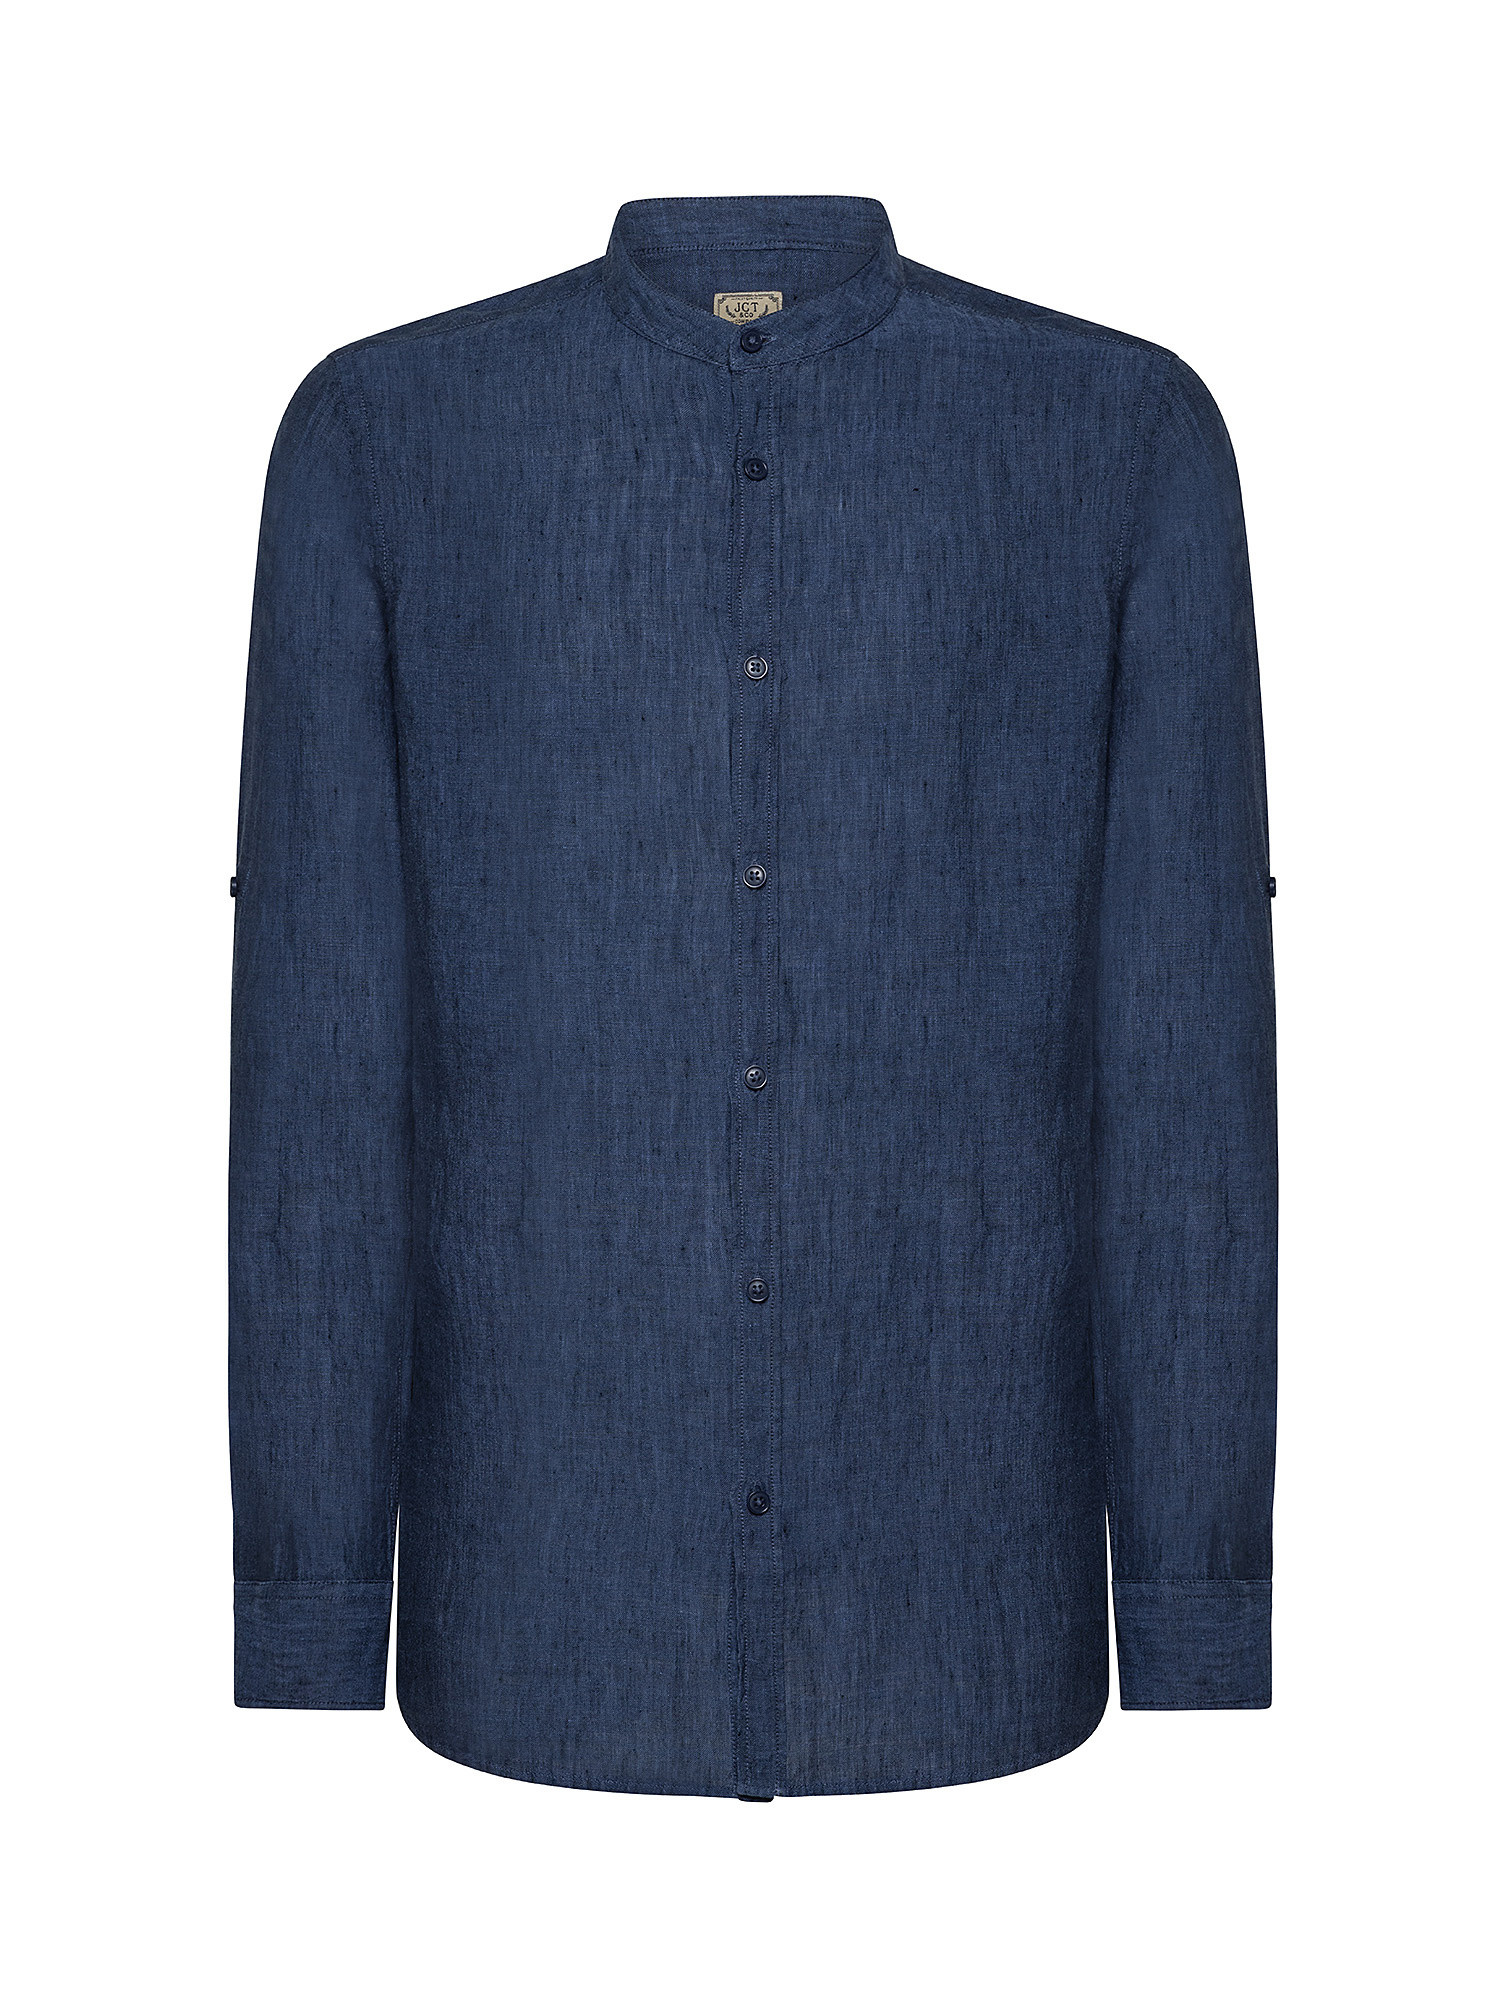 Camicia puro lino collo coreana, Blu, large image number 0